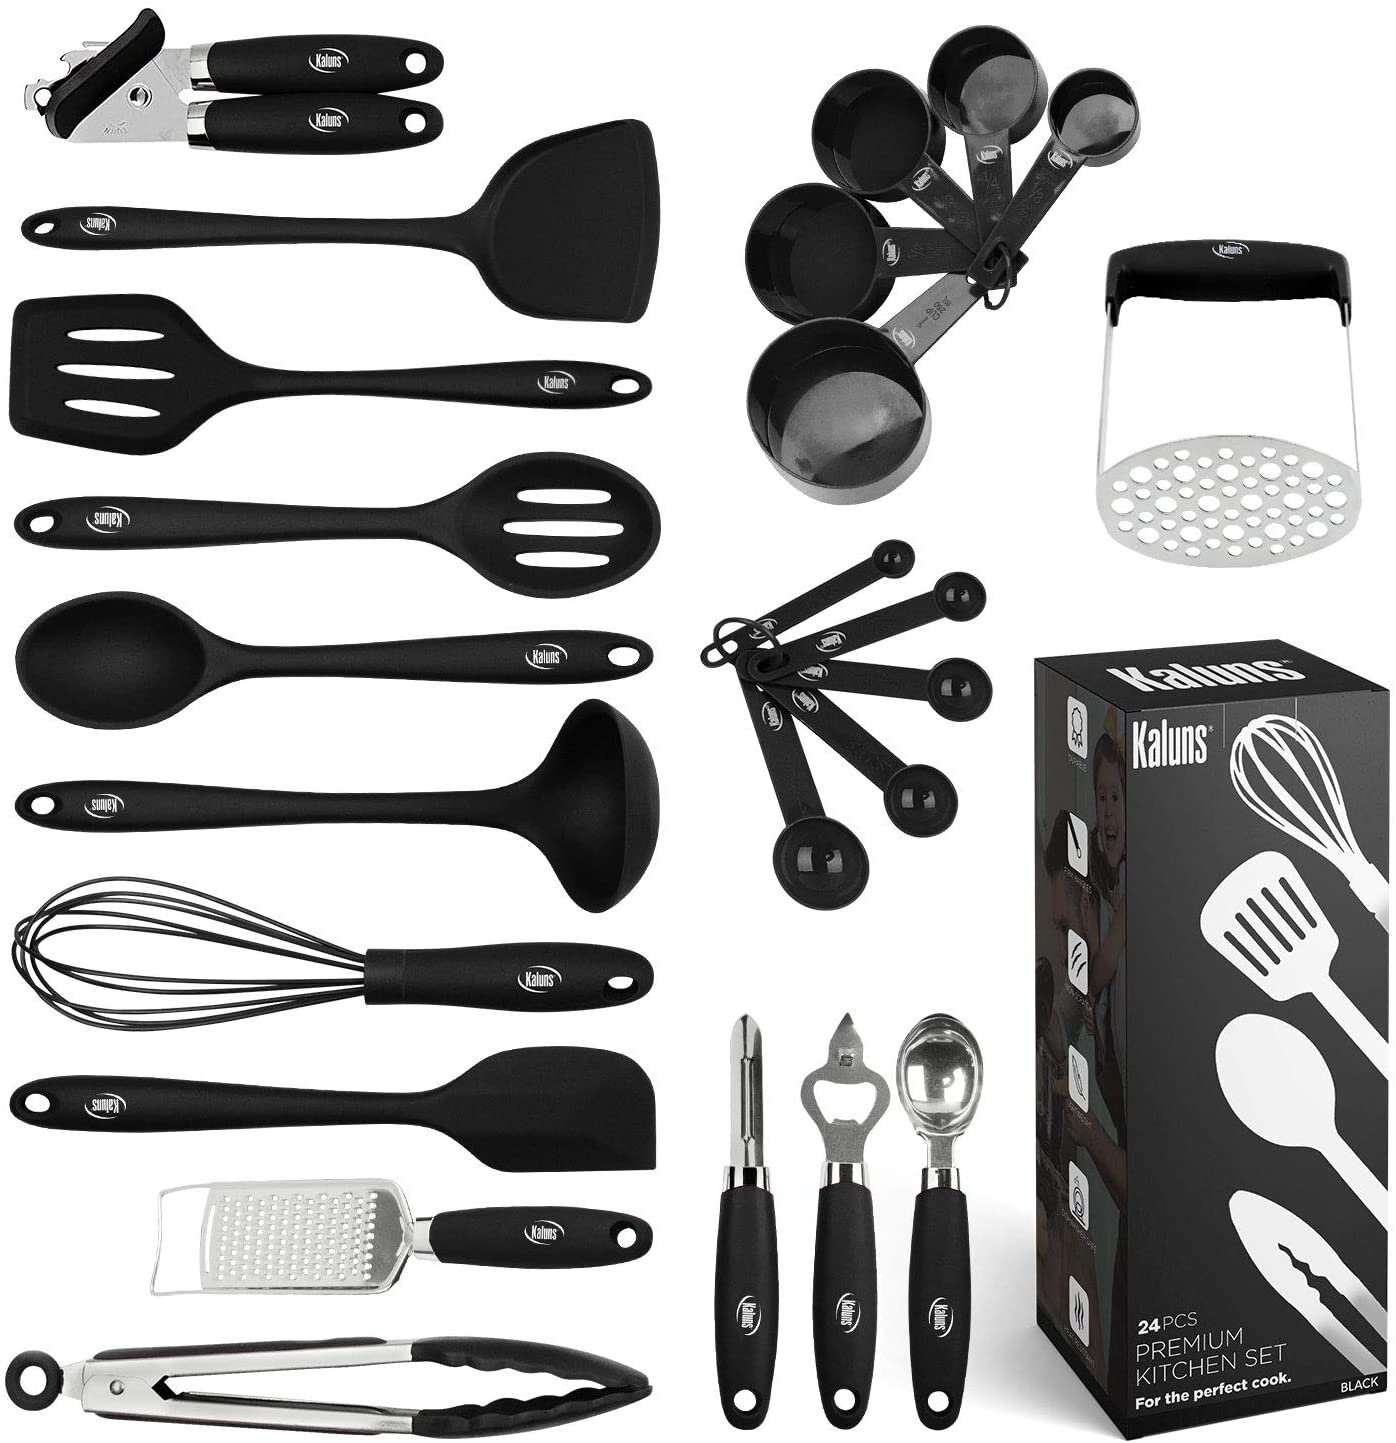 https://assets.wfcdn.com/im/64331764/compr-r85/1397/139730430/silicone-assorted-kitchen-utensil-set.jpg